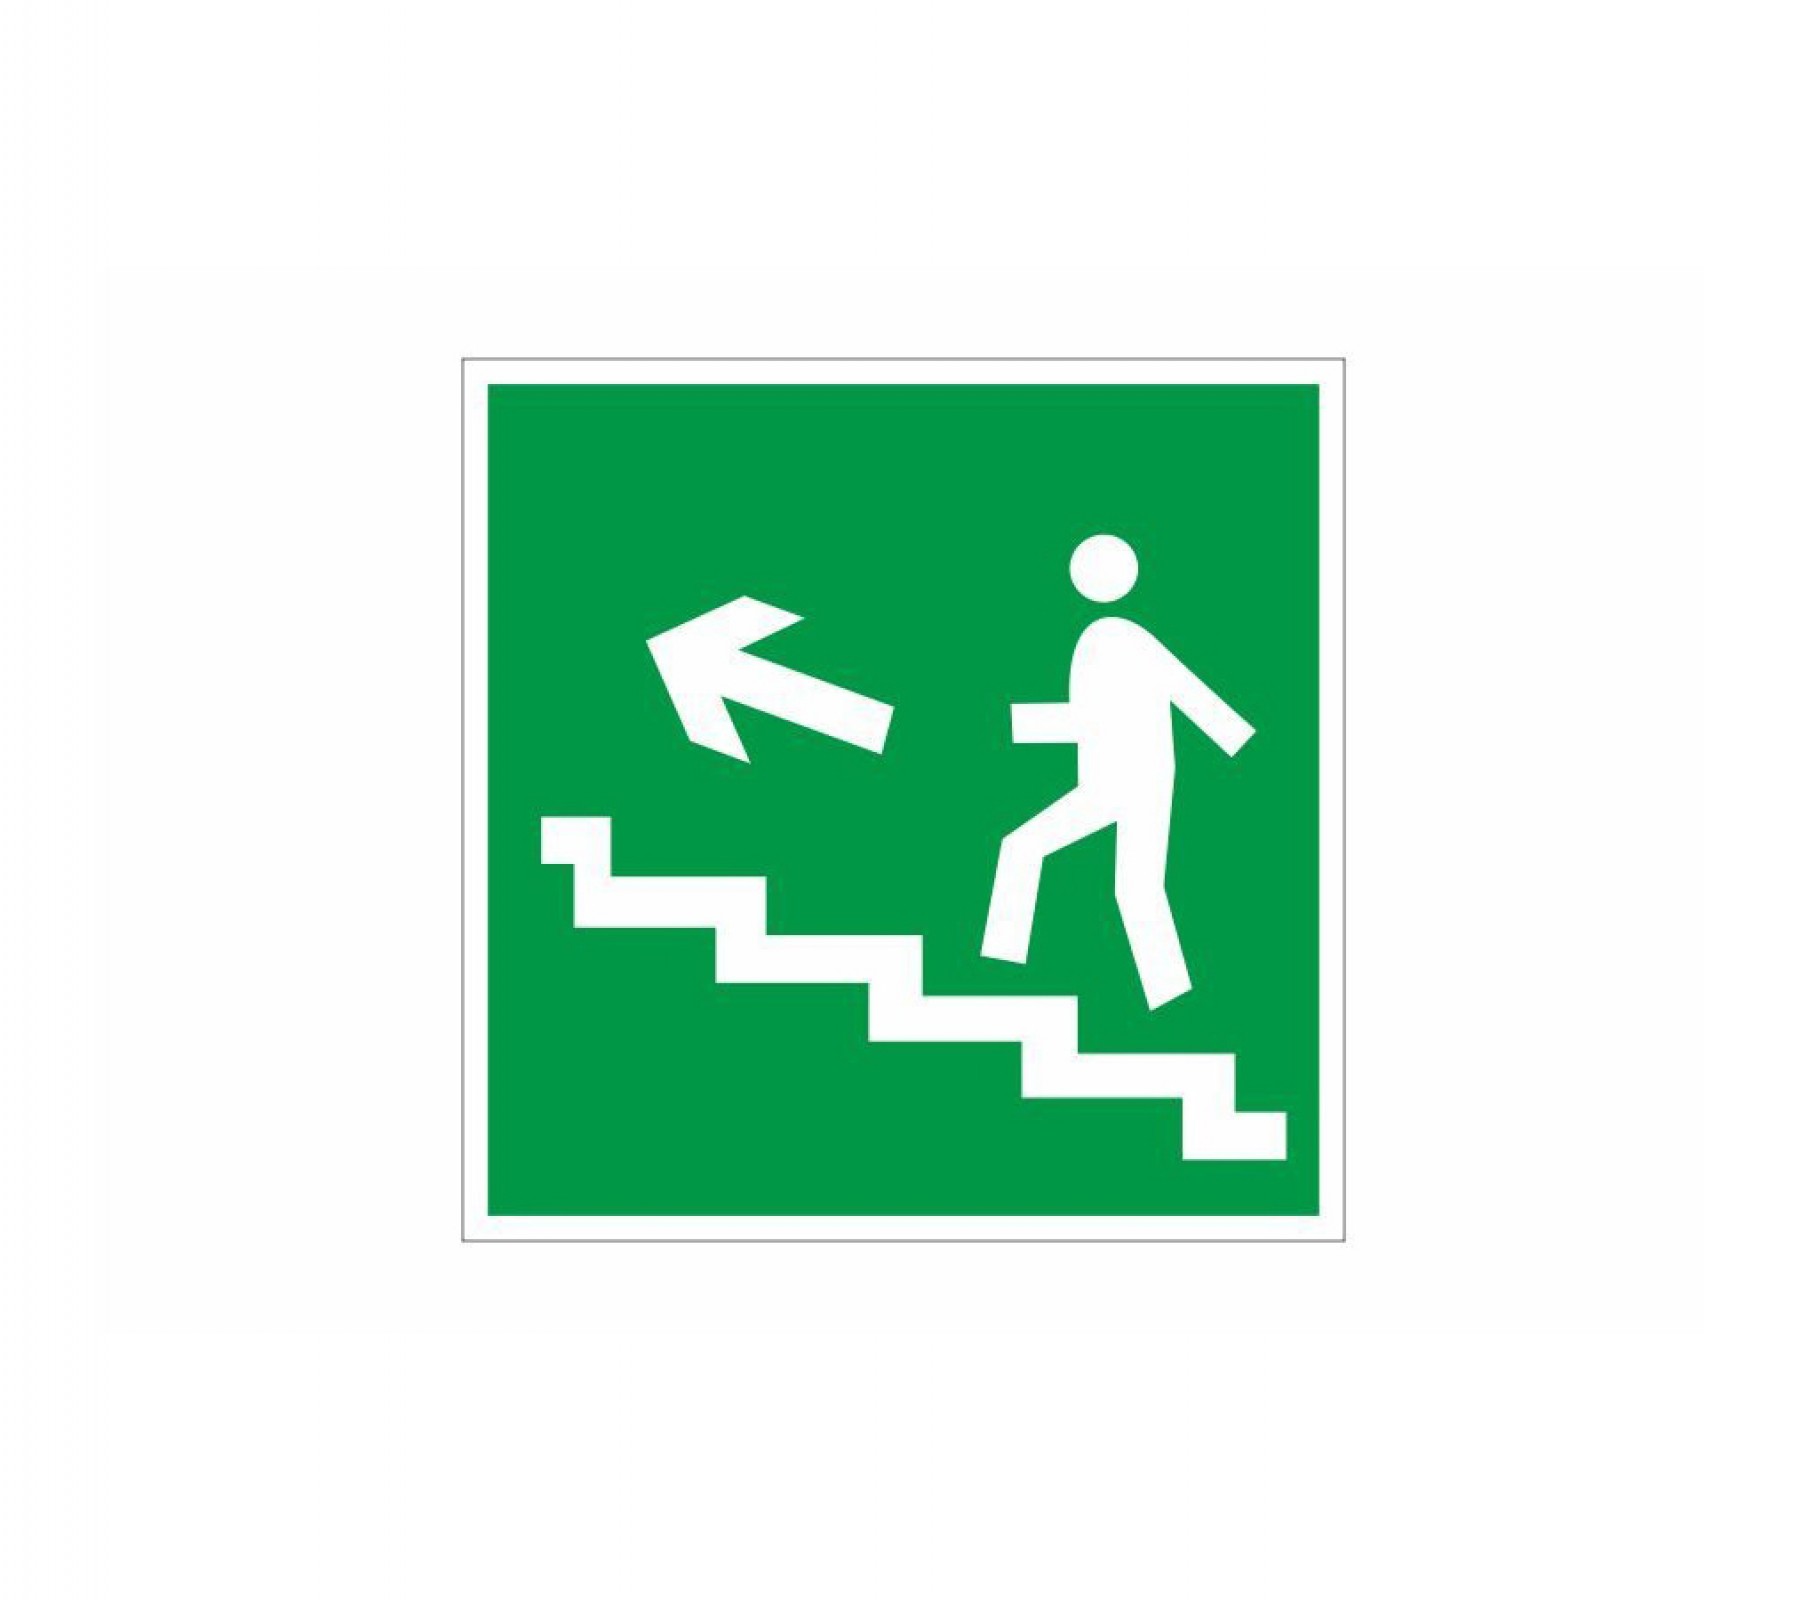 Направление к эвакуационному выходу по лестнице вверх (левосторонний)